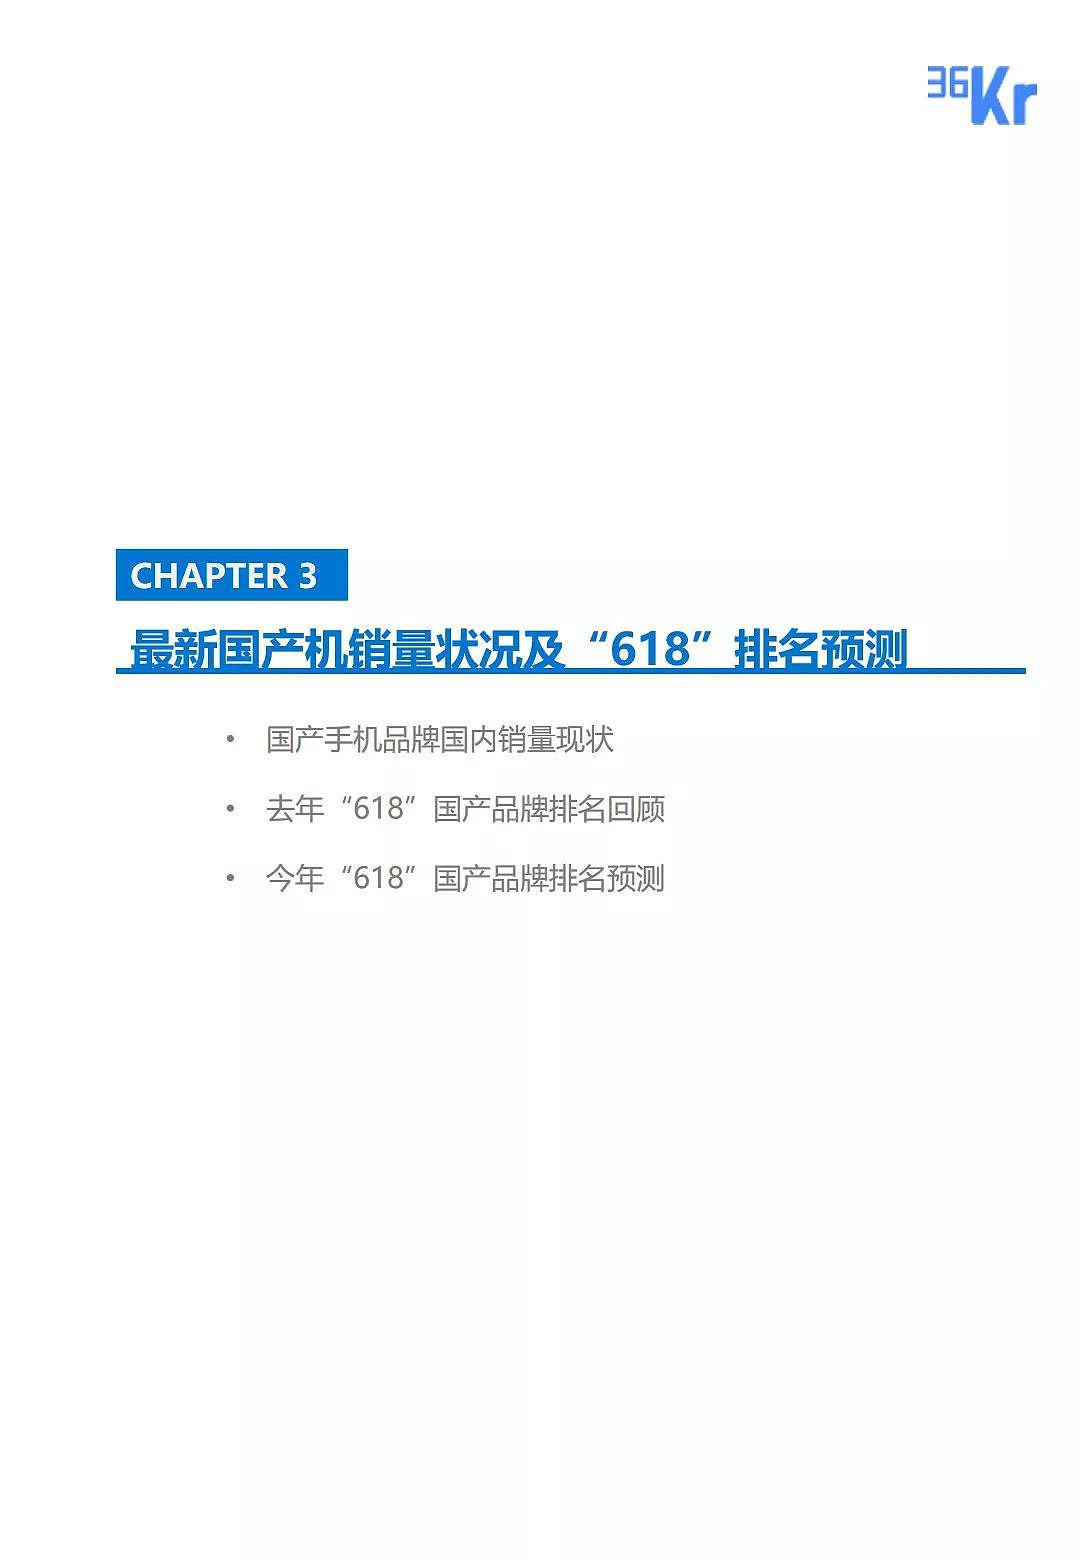 中国手机品牌市场营销研究报告 | 36氪研究 - 25